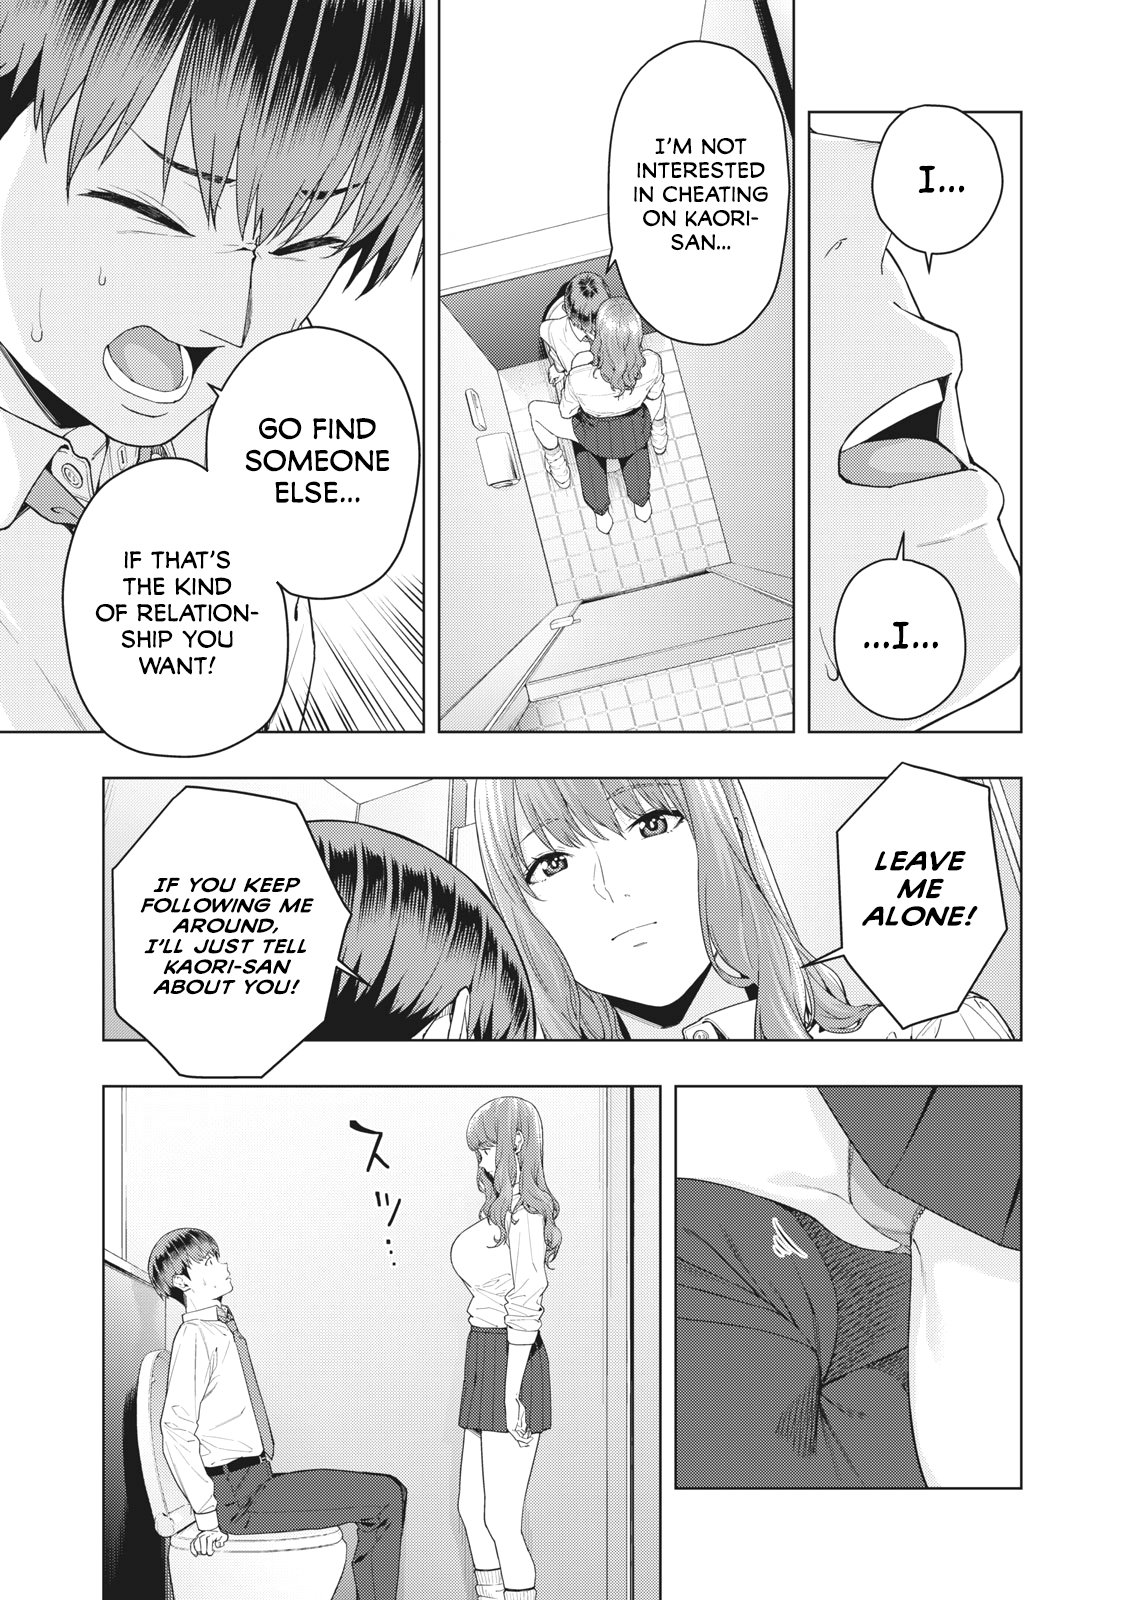 My Girlfriends Friend Chapter 3 Manga18plus 